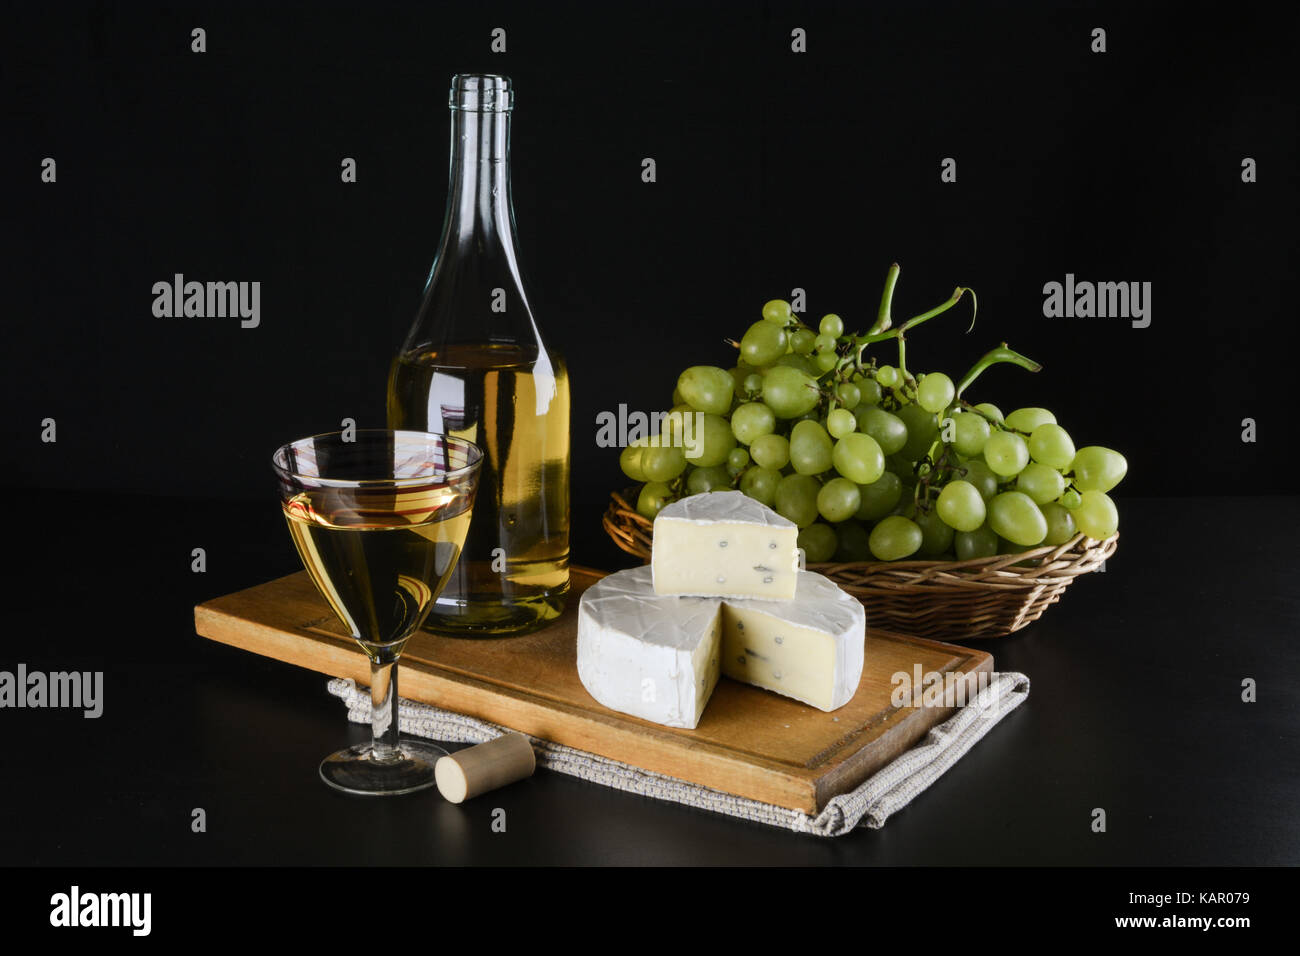 Una bottiglia di vino bianco in background, uva in un canestro e il formaggio dor blu e un bicchiere di vino bianco su sfondo nero Foto Stock